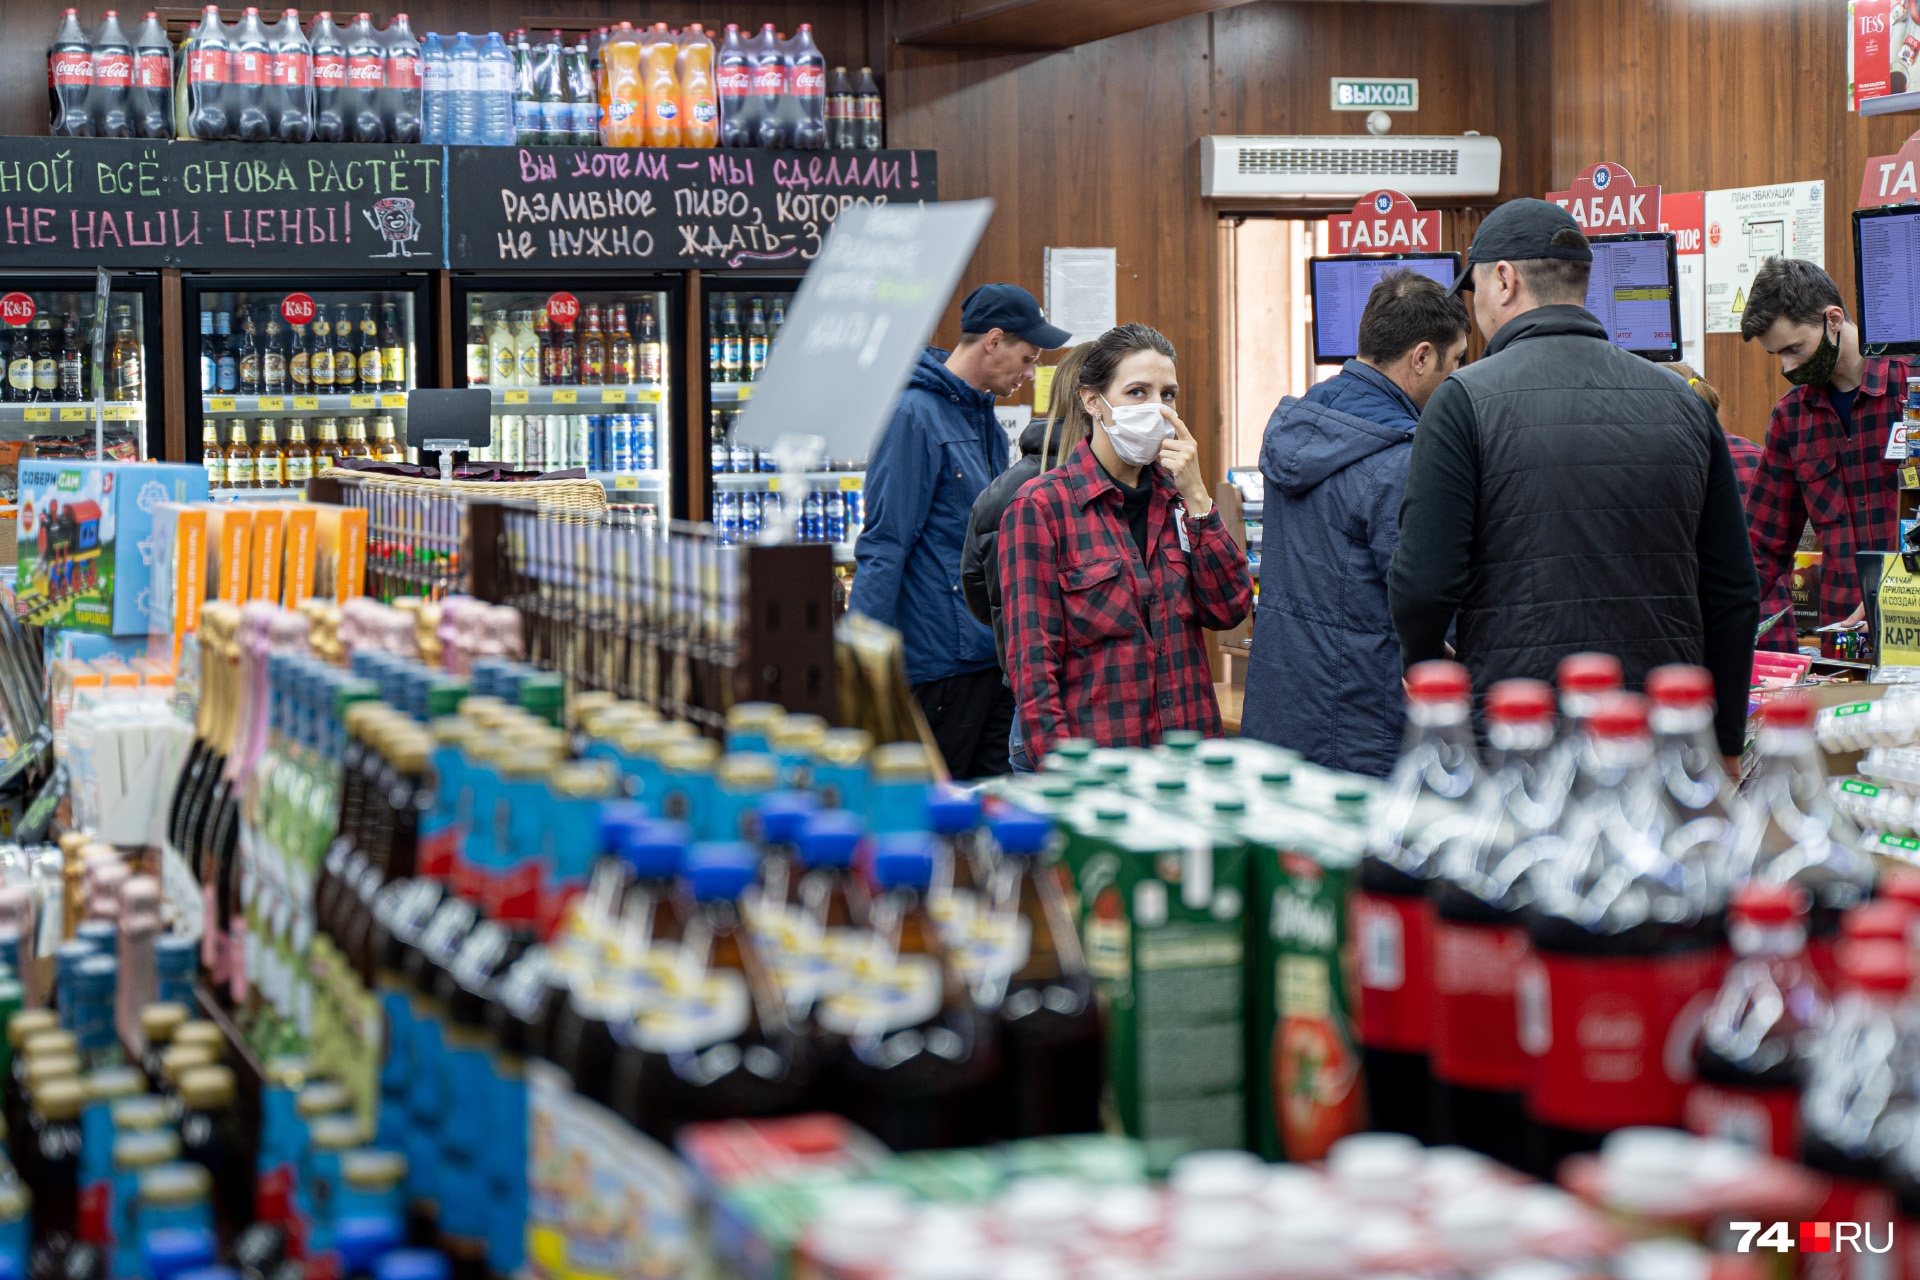 Самоизоляция с бокалом: почему алкомаркеты в Челябинске работают во время карантина